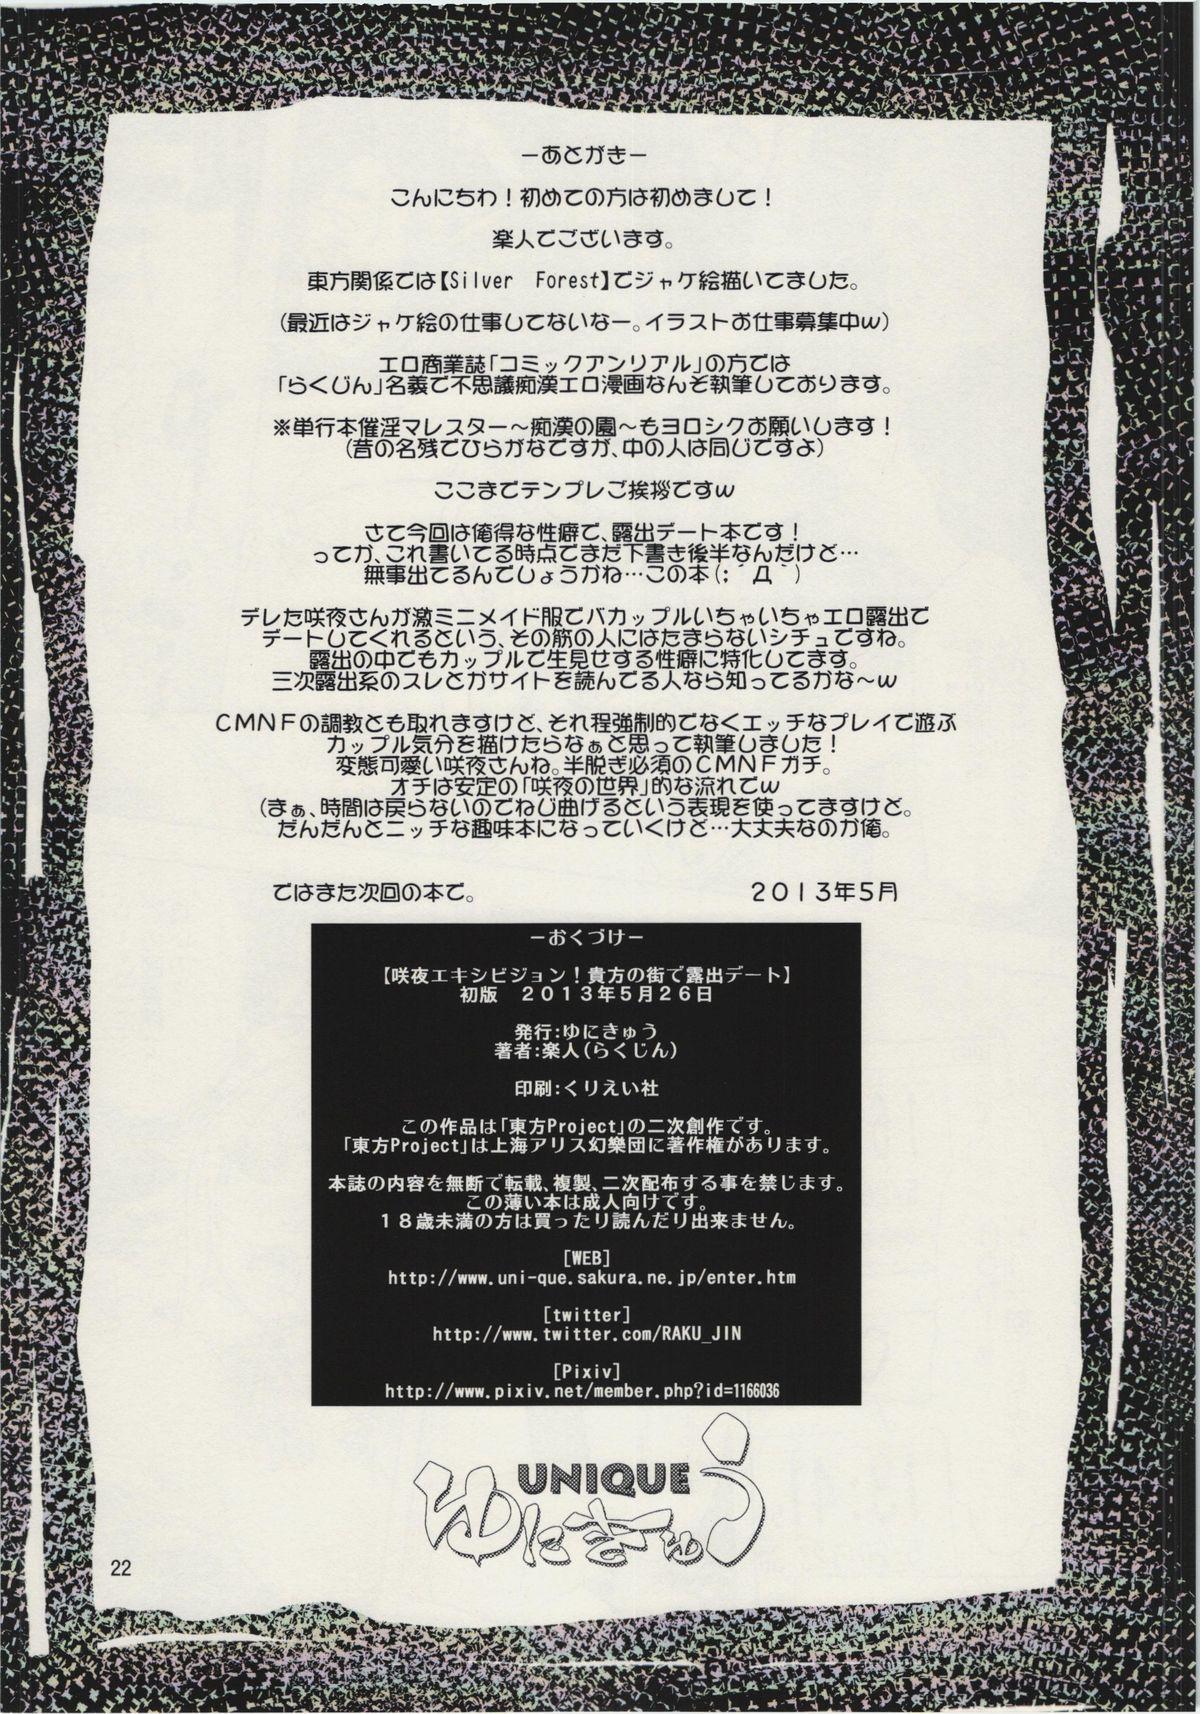 Sakuya Exhibition! Anata no Machi de Roshutsu Date 21